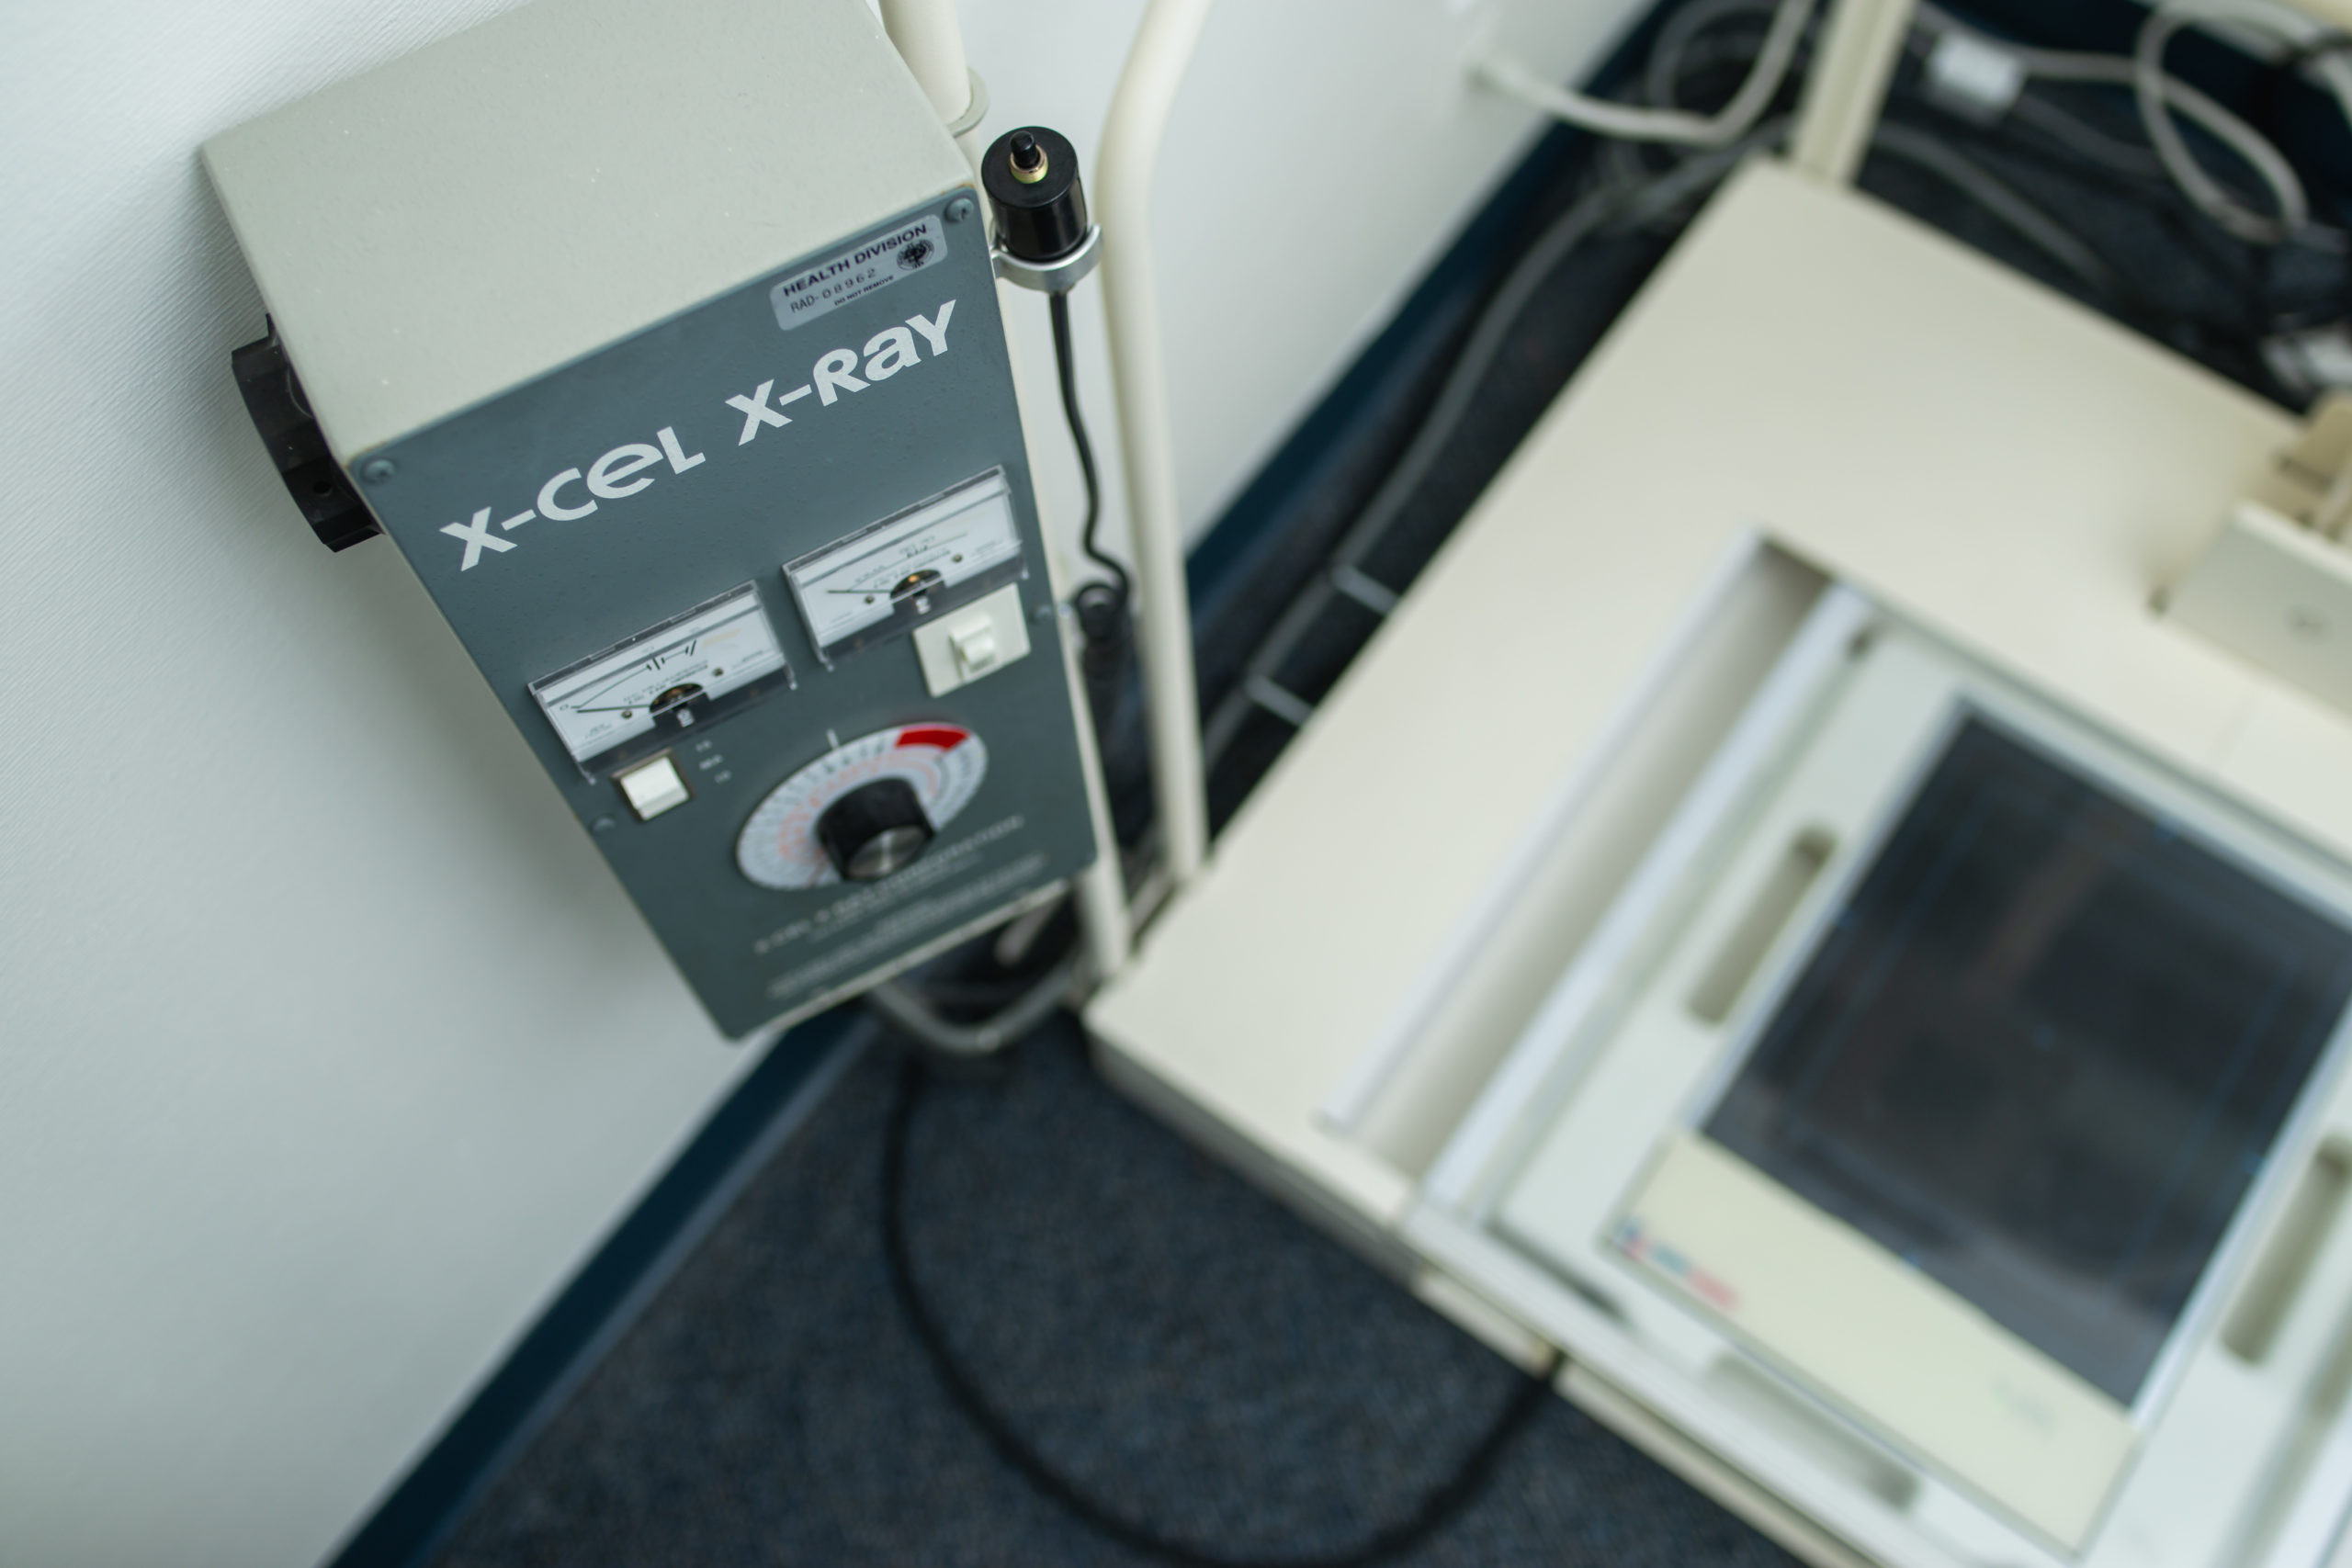 X-cel X-Ray machine